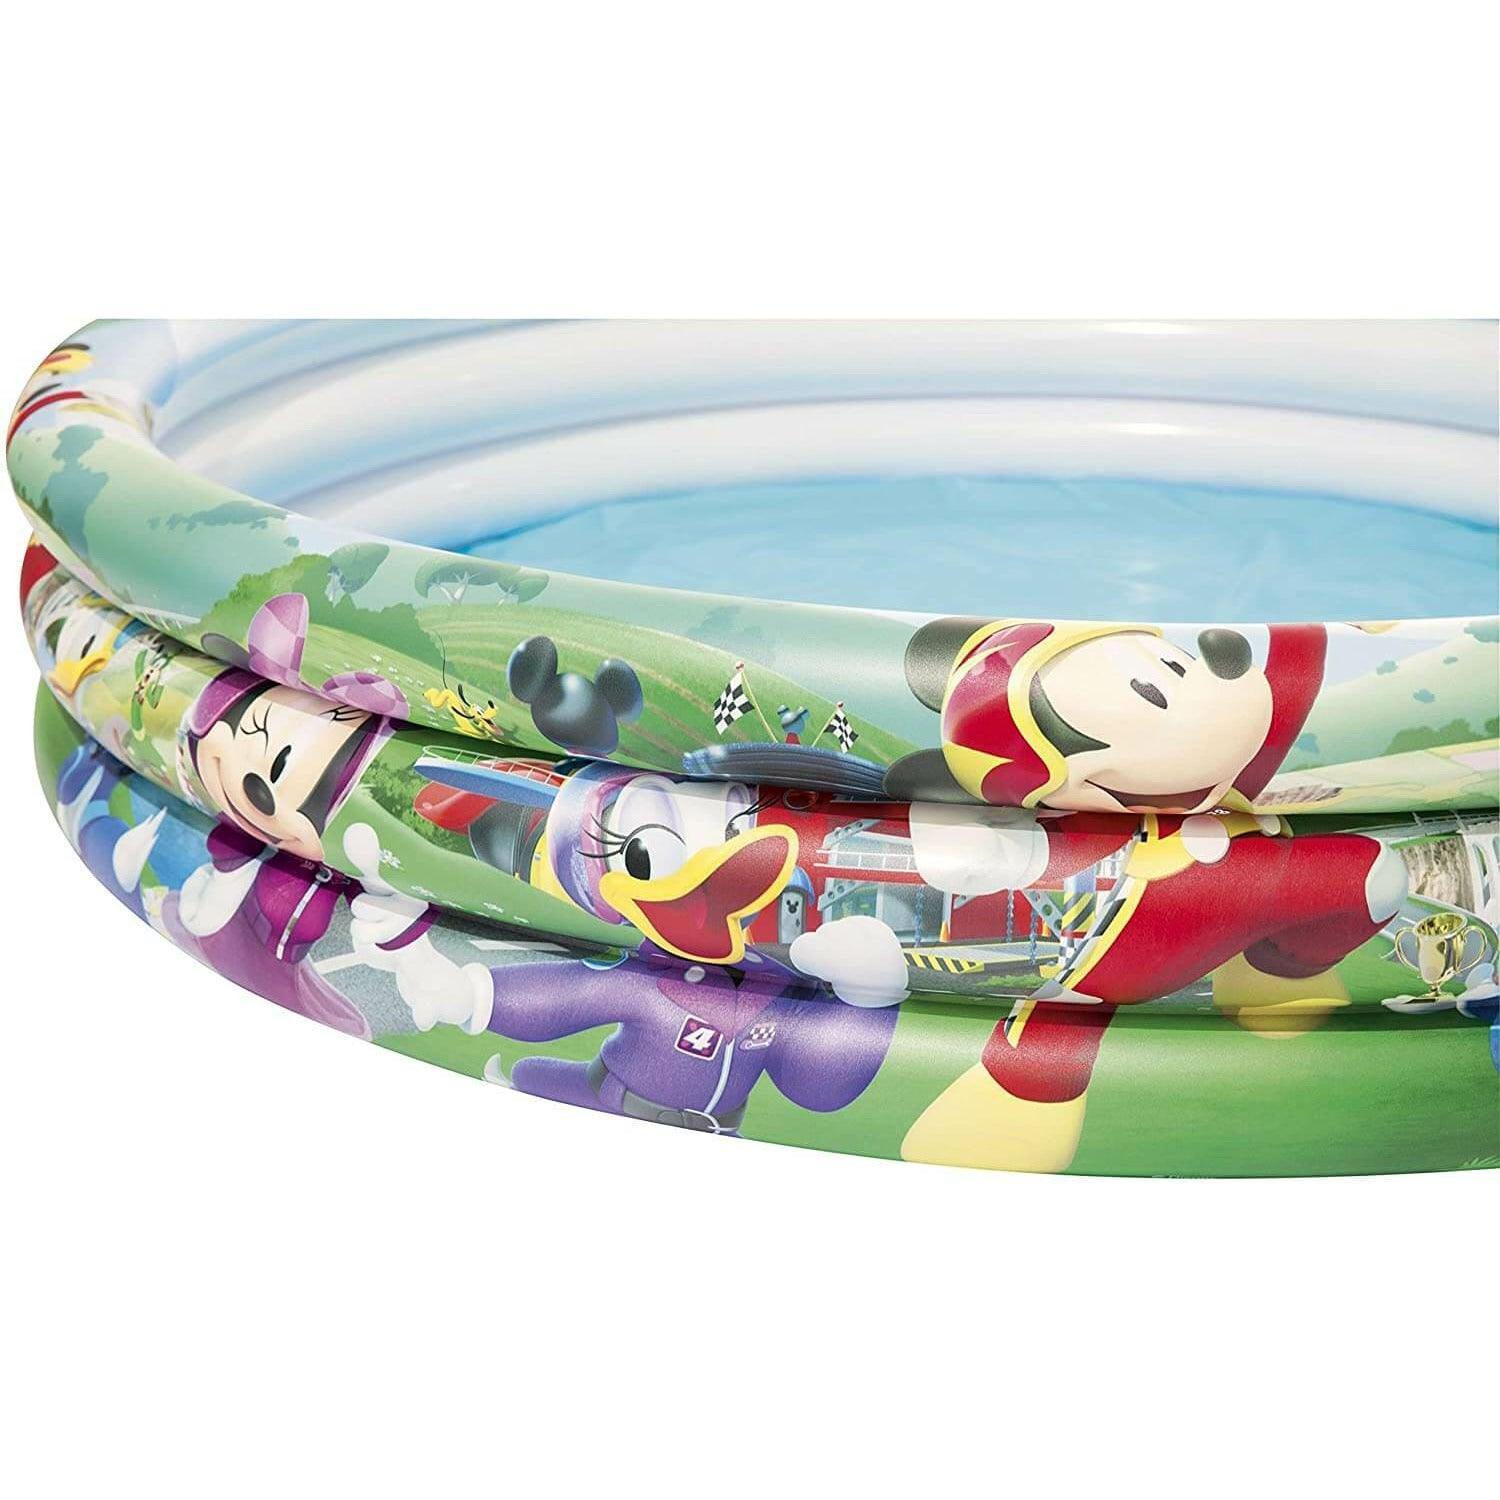 Bestway Inflatable Disney Characters Kiddie Pool - Ourkids - Bestway